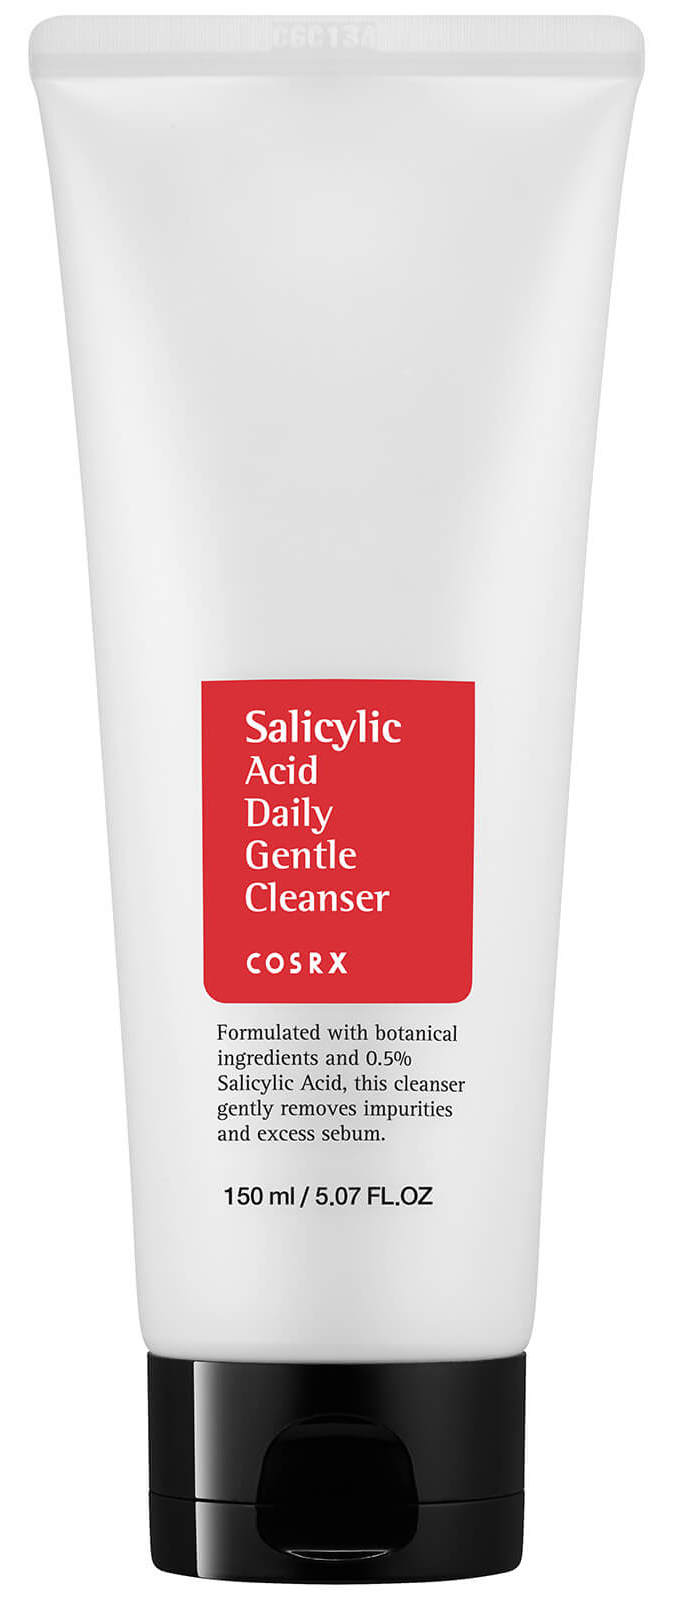 COSRX Пенка с салициловой кислотой для умывания, для проблемной кожи / Salicylic Acid Daily Gentle Cleanser 150 мл  - Купить